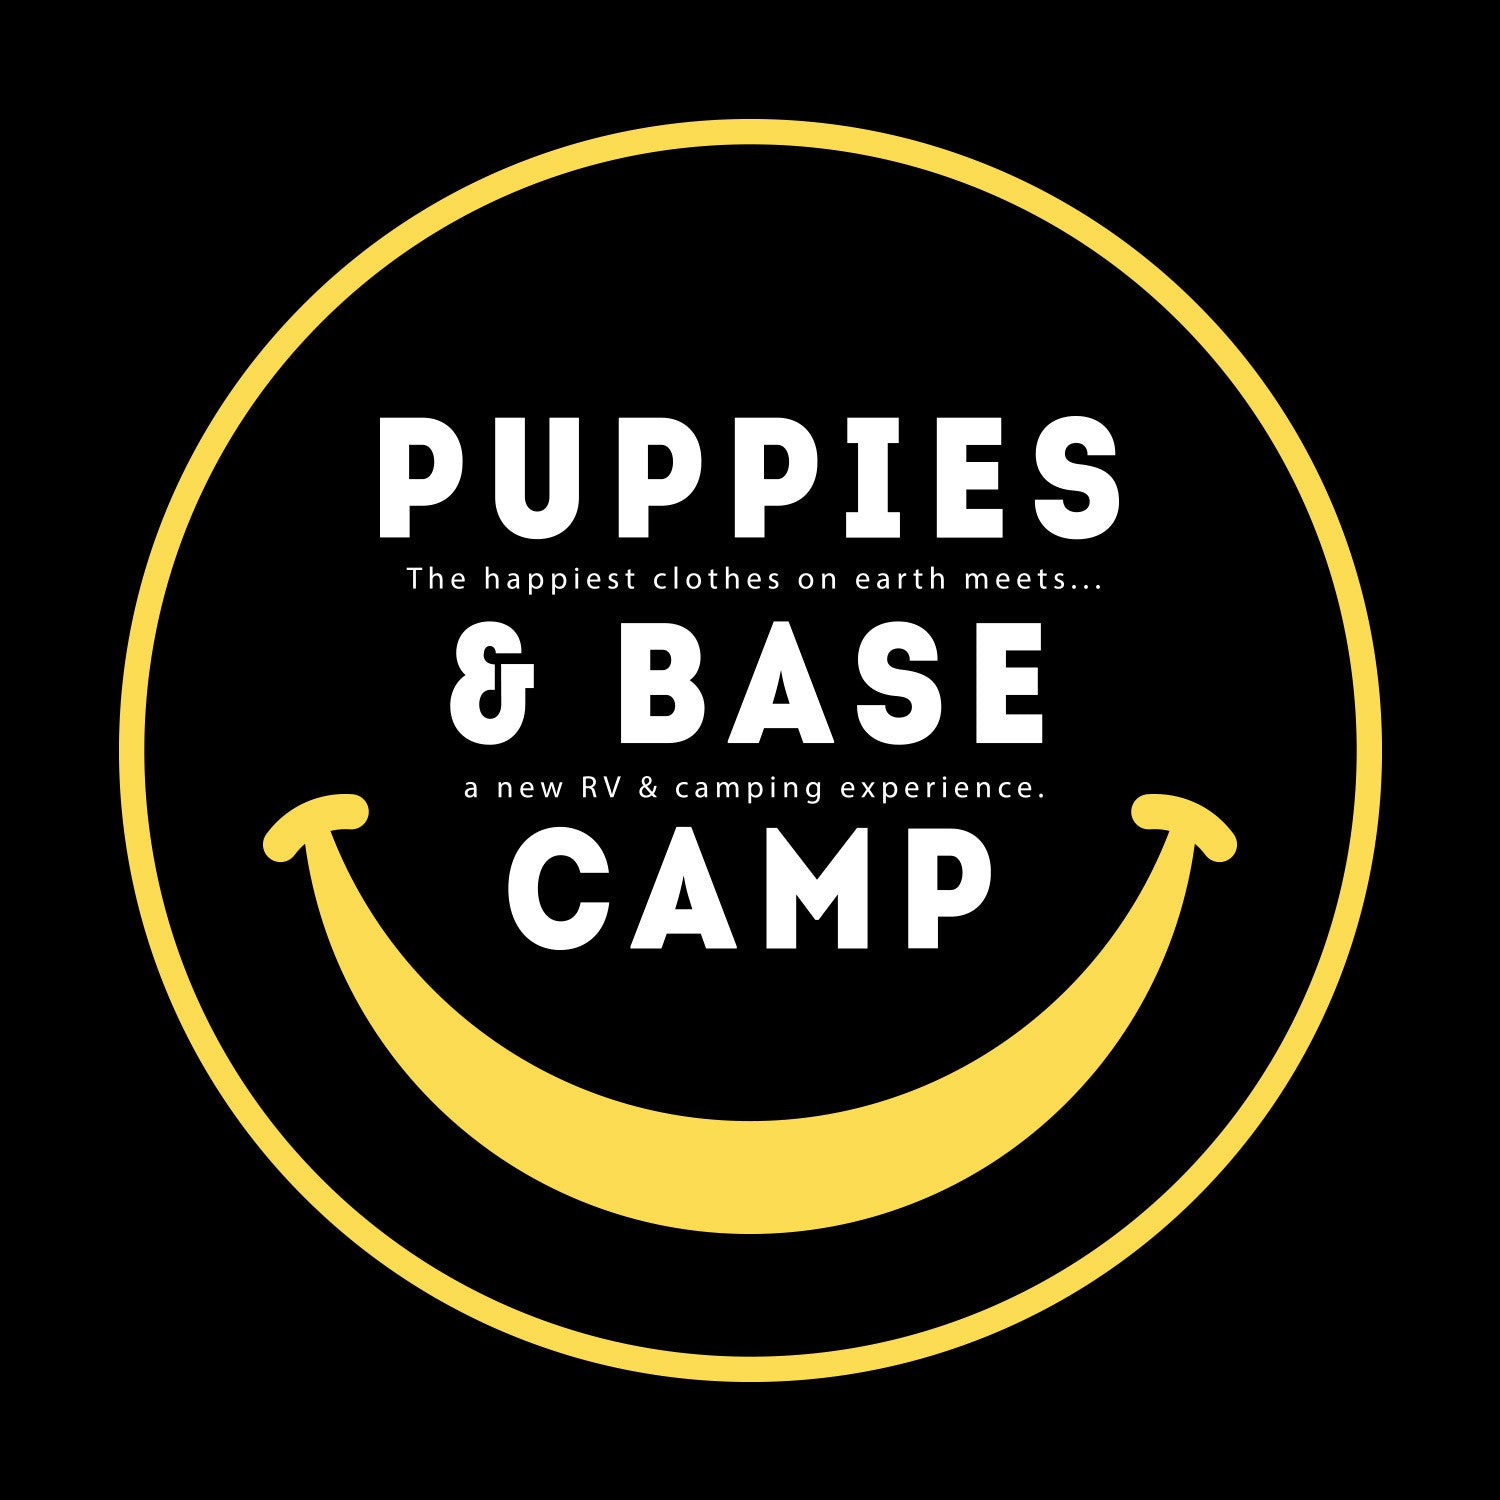 Join Puppies at Base Camp